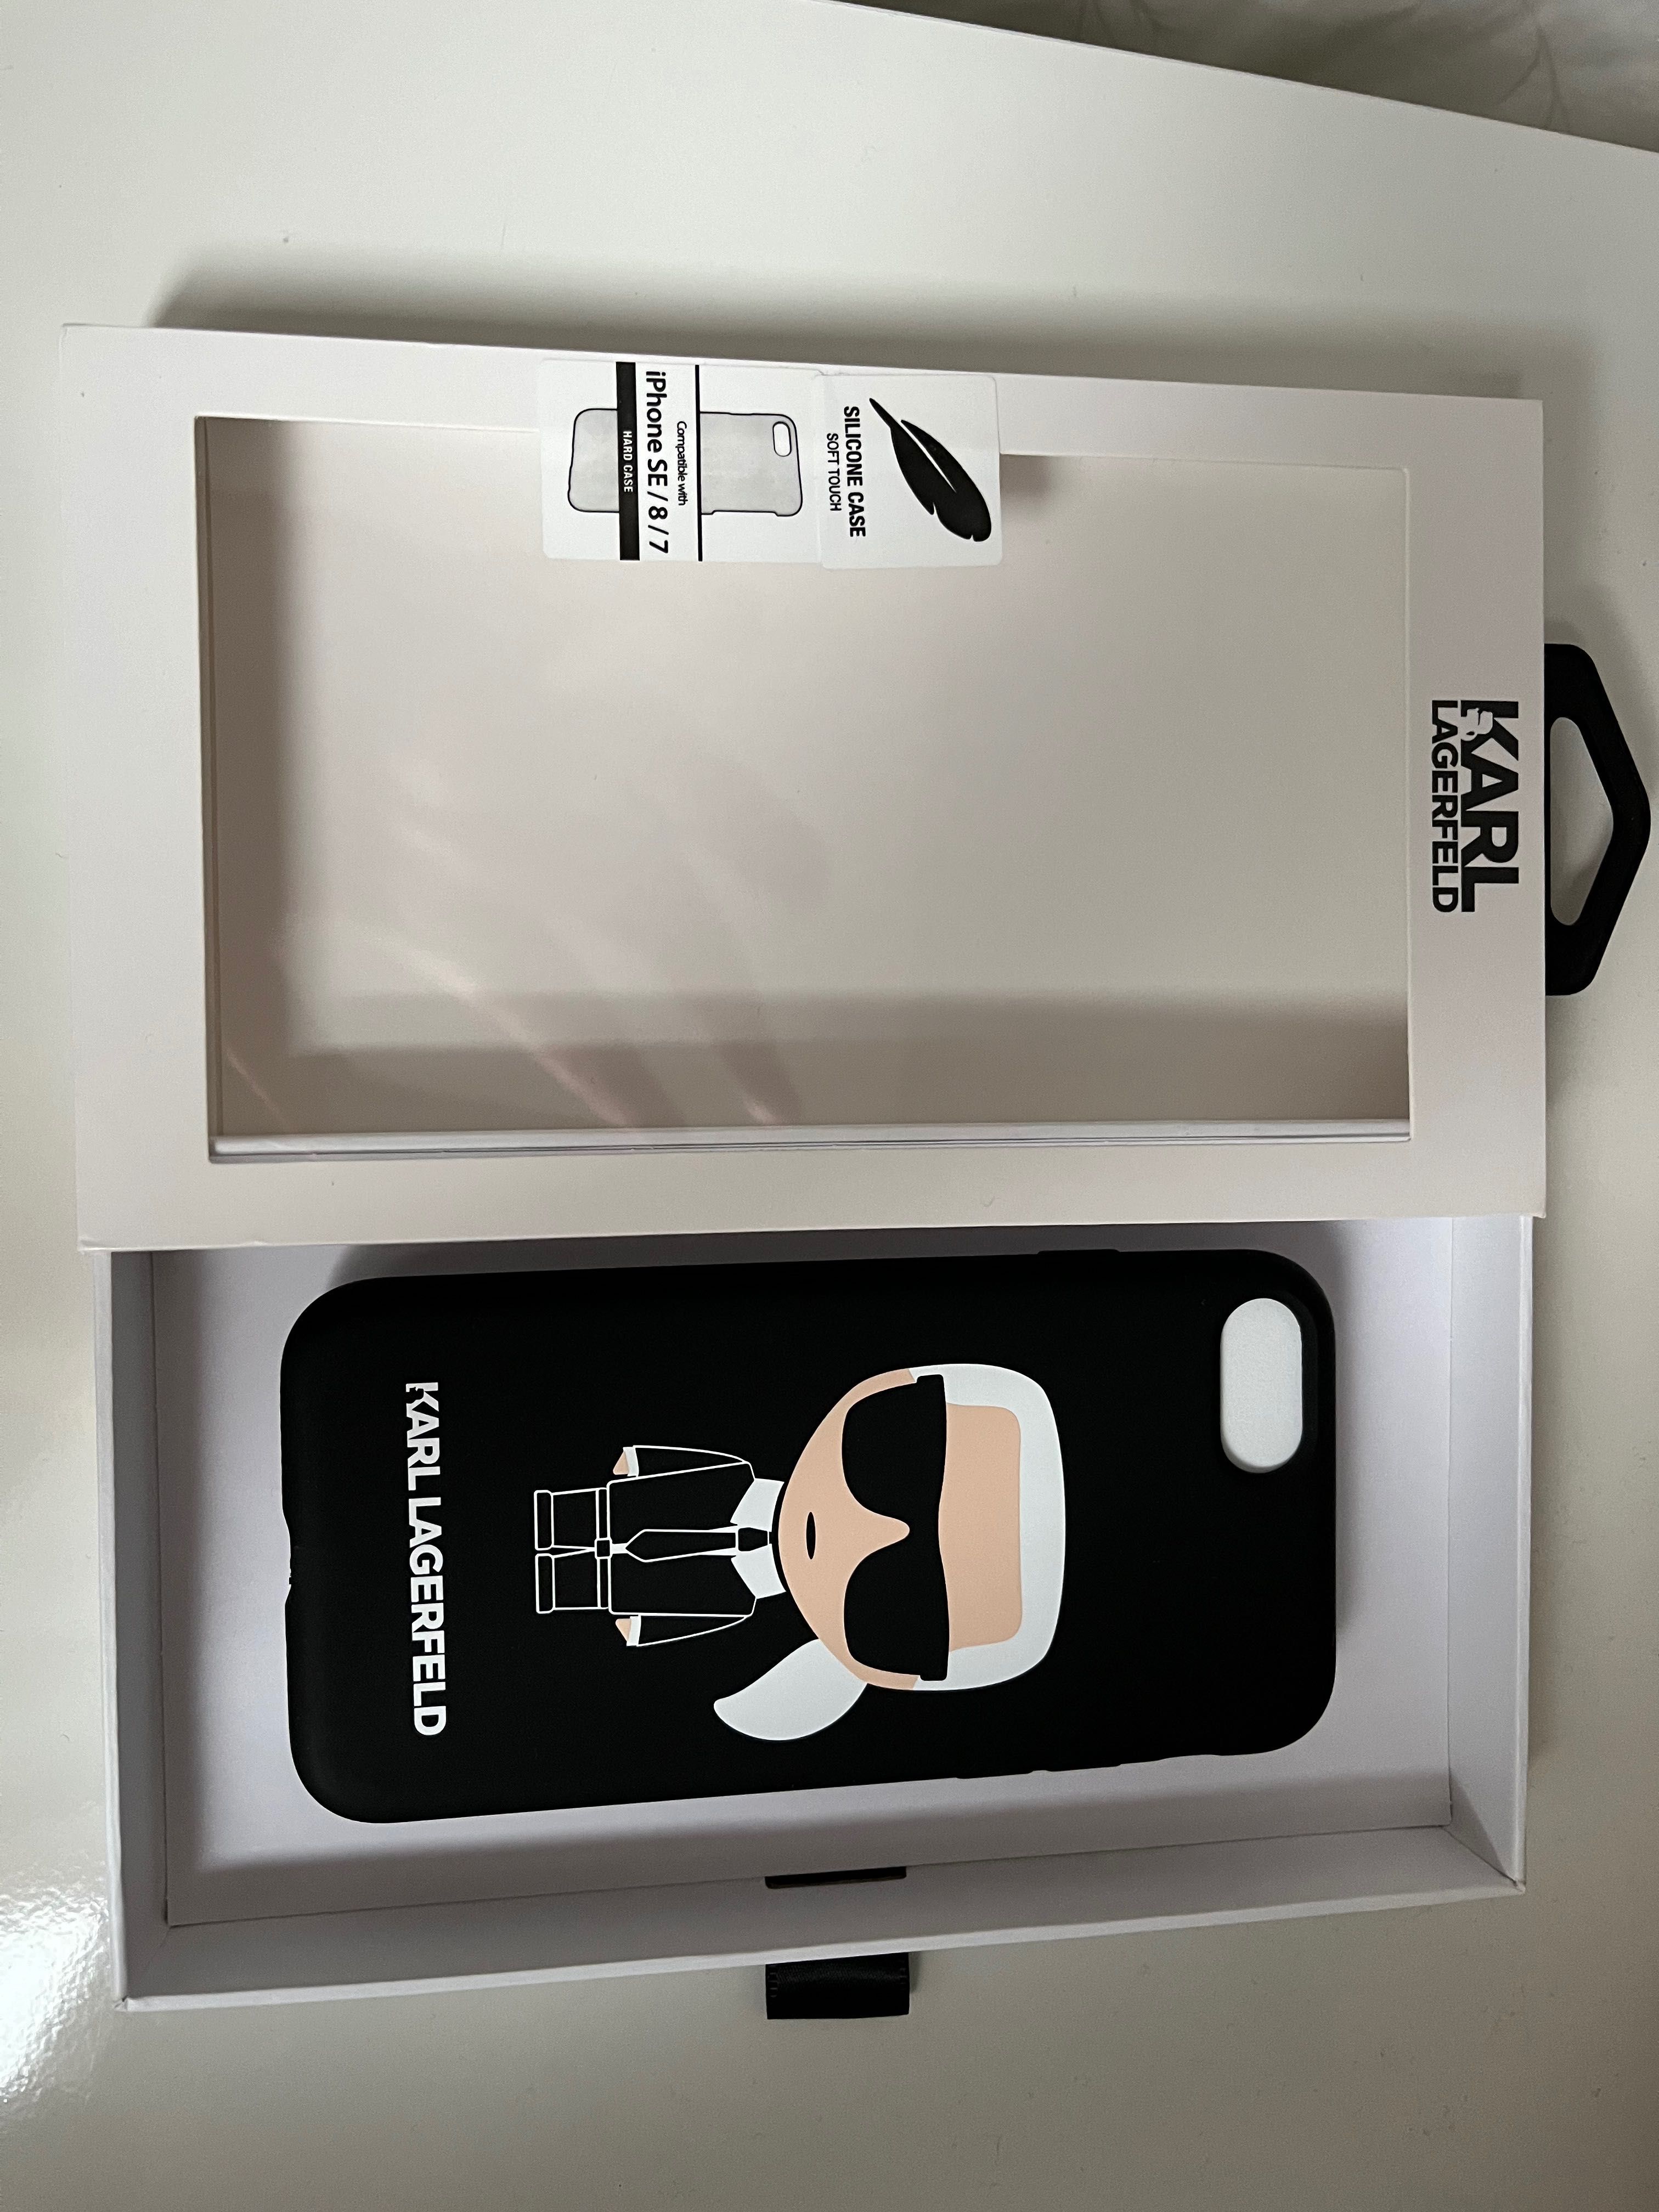 Nowe Etui iphone 8/7/SE Karl Lagerfeld, czarne